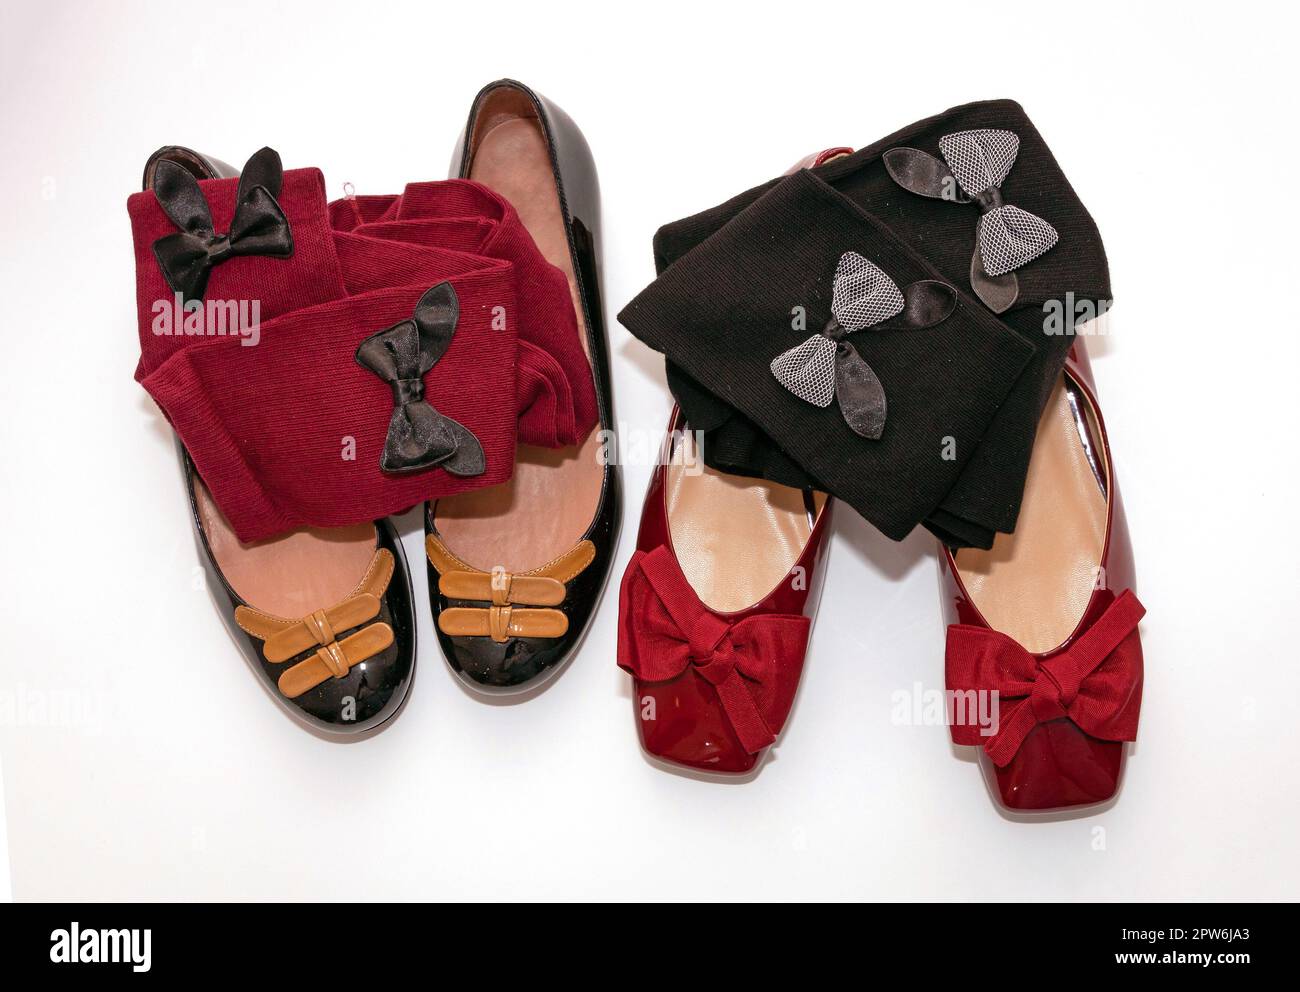 Elegant female flat ballerina patent leather shoes with decorative bow socks isolated on white background Stock Photo